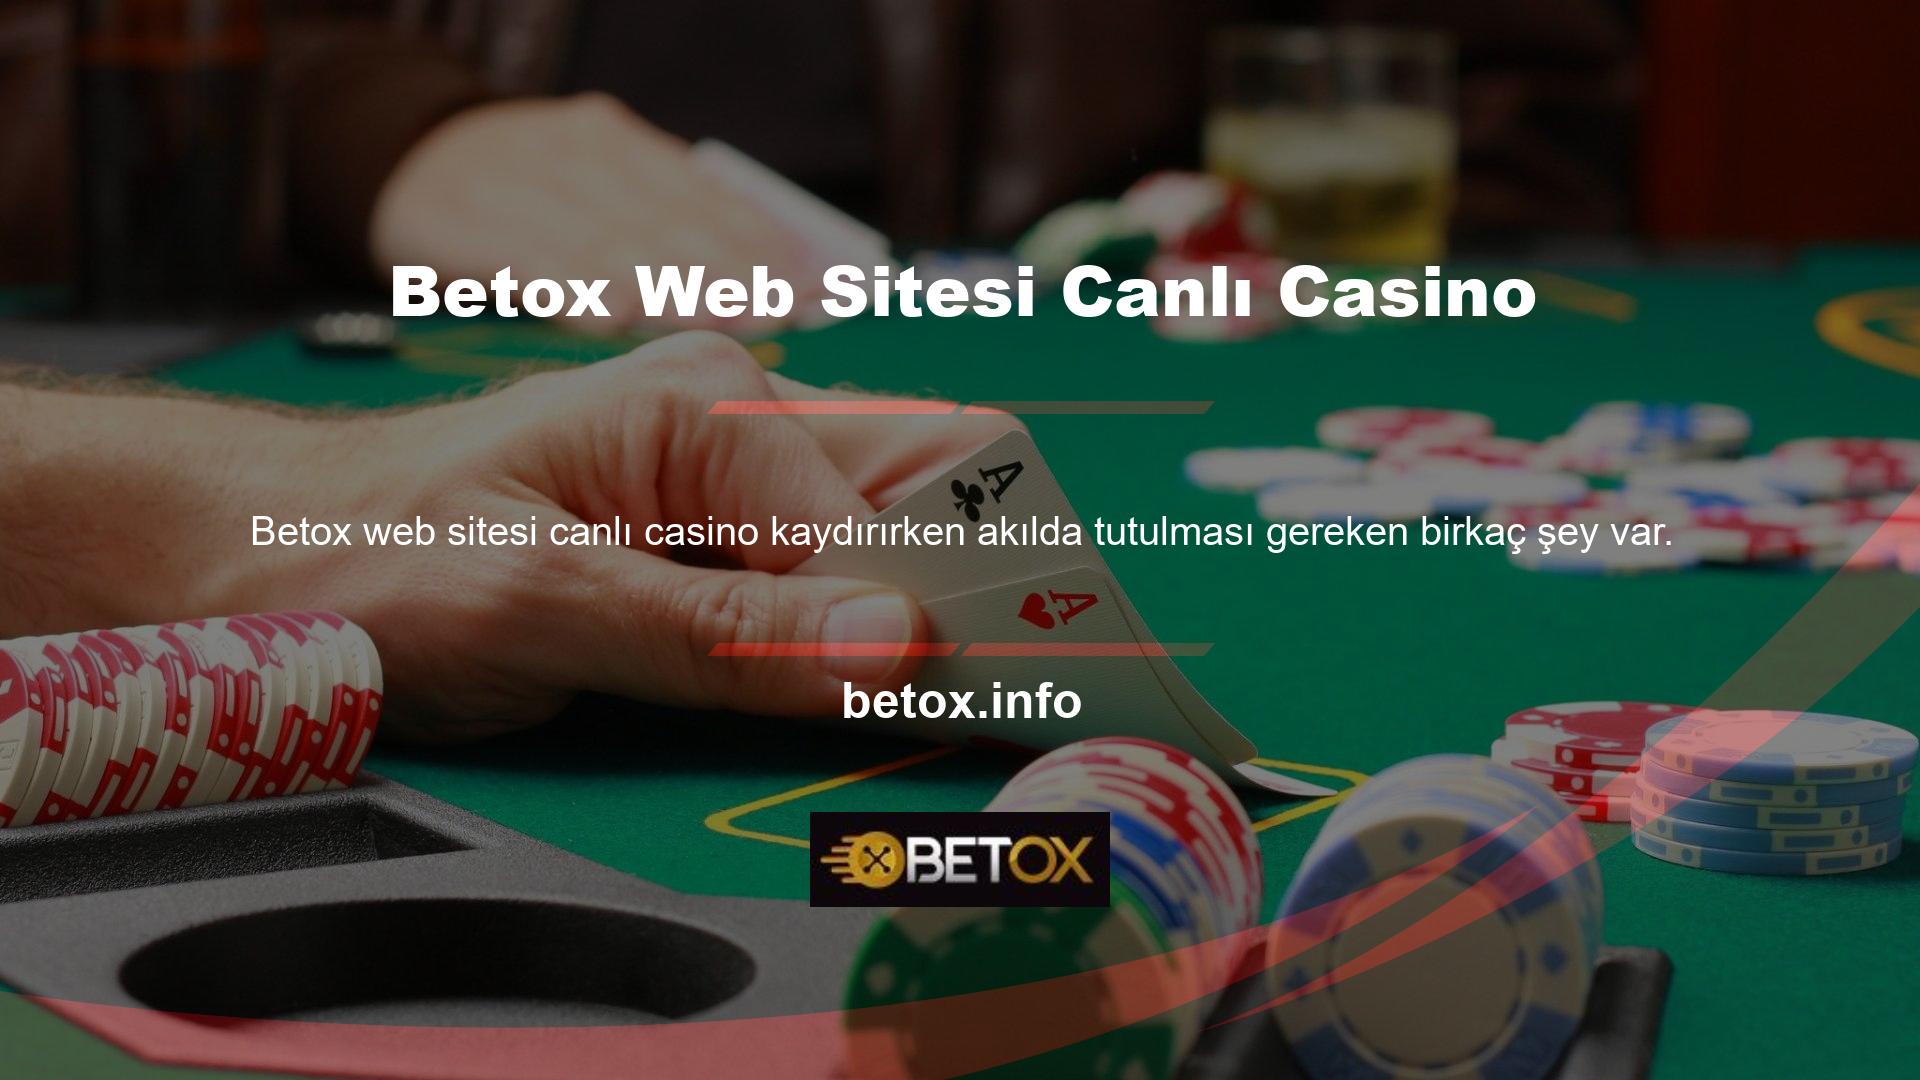 Betox Web Sitesinde Canlı Casino Öncelikle hedef bahis kuponunun her zaman gerçekleşmeyen bir fırsat olduğunu açıkça belirtelim